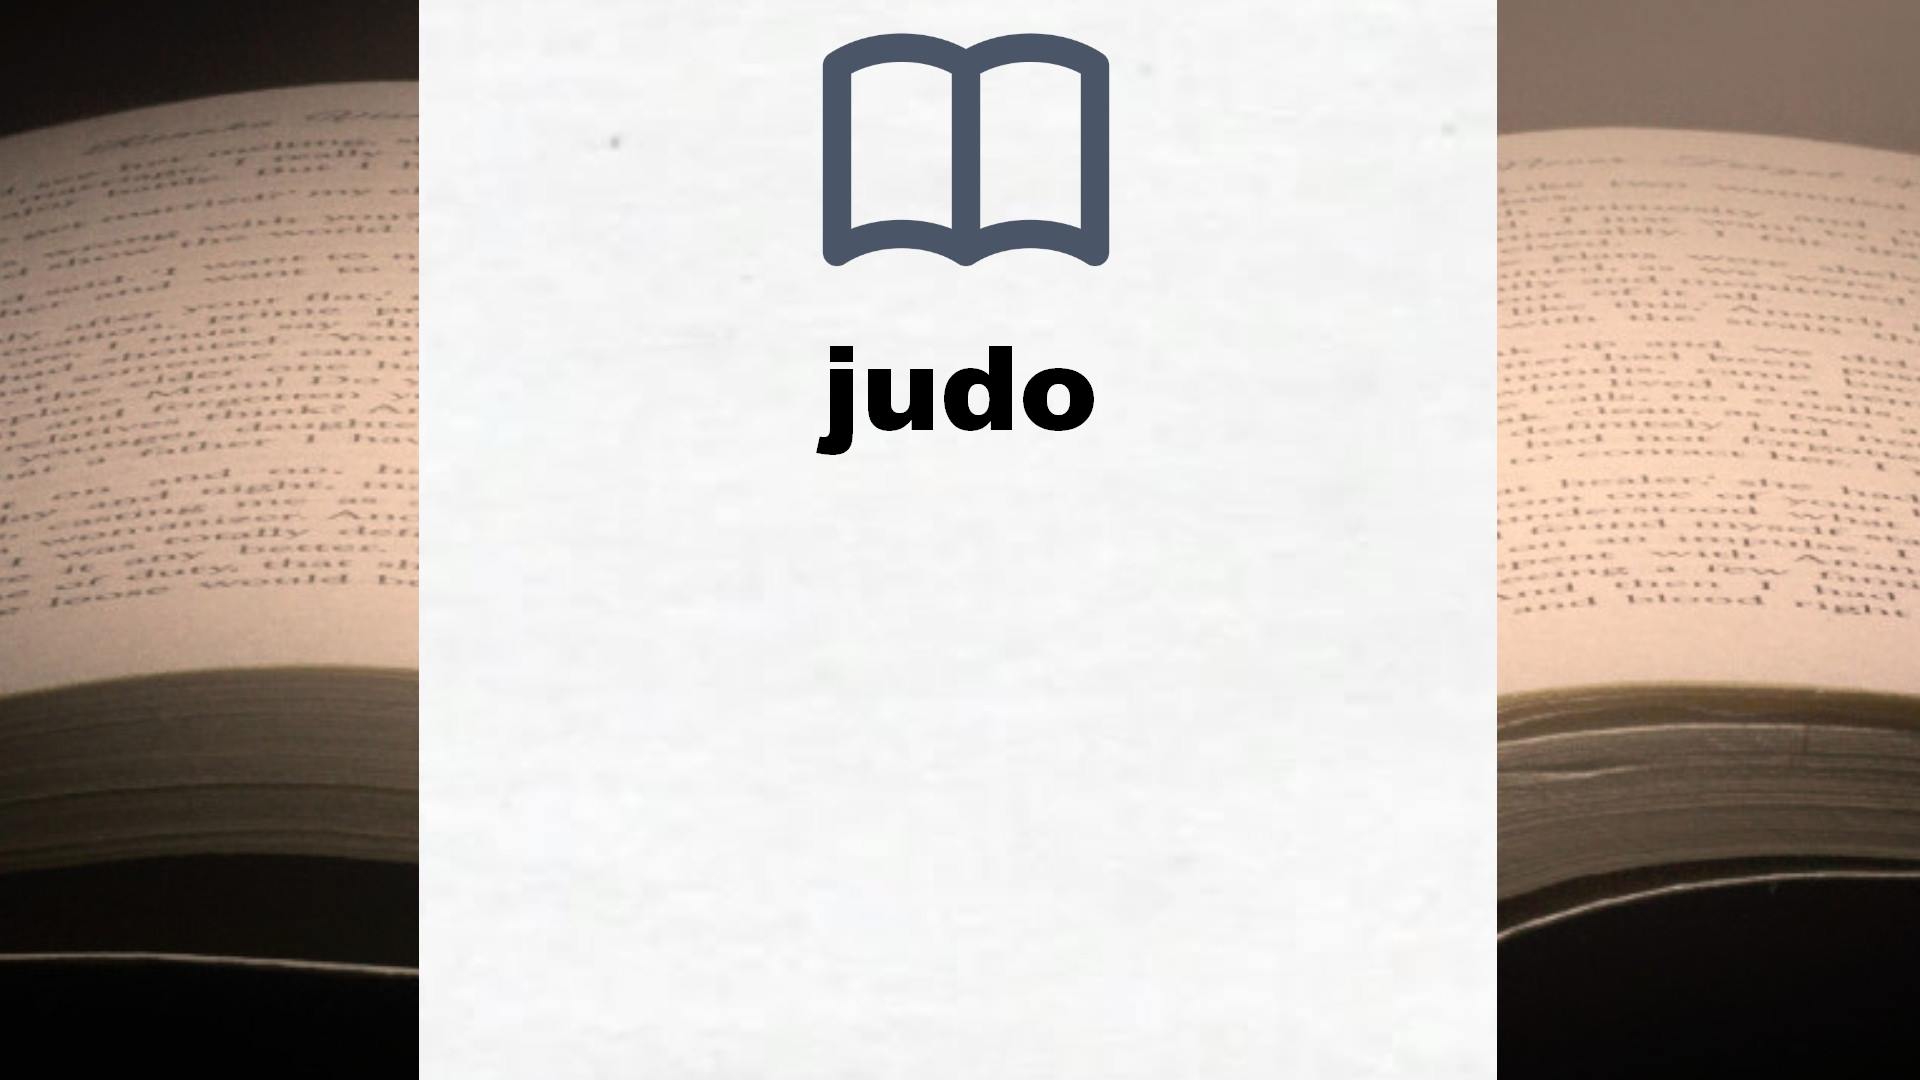 Libros sobre judo